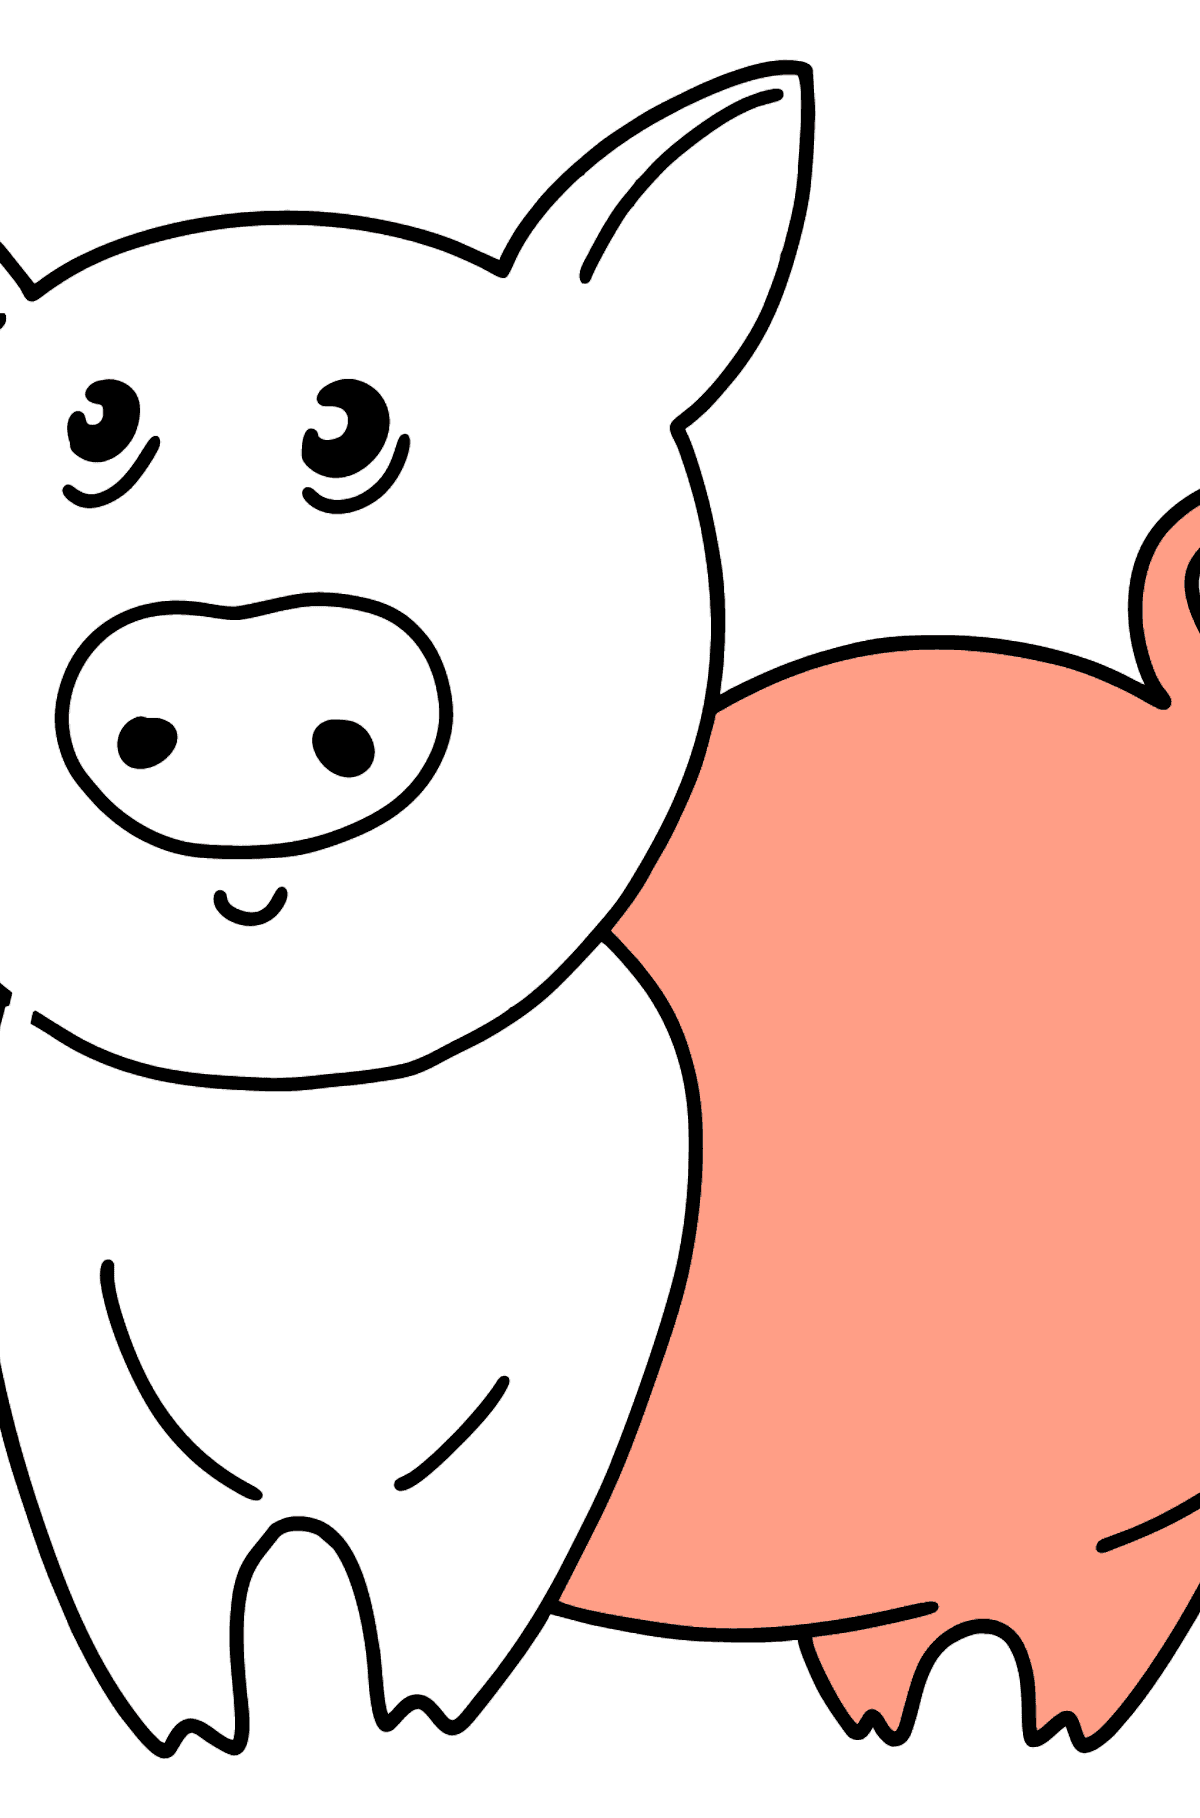 Dibujo para colorear de cerdo - Dibujos para Colorear para Niños